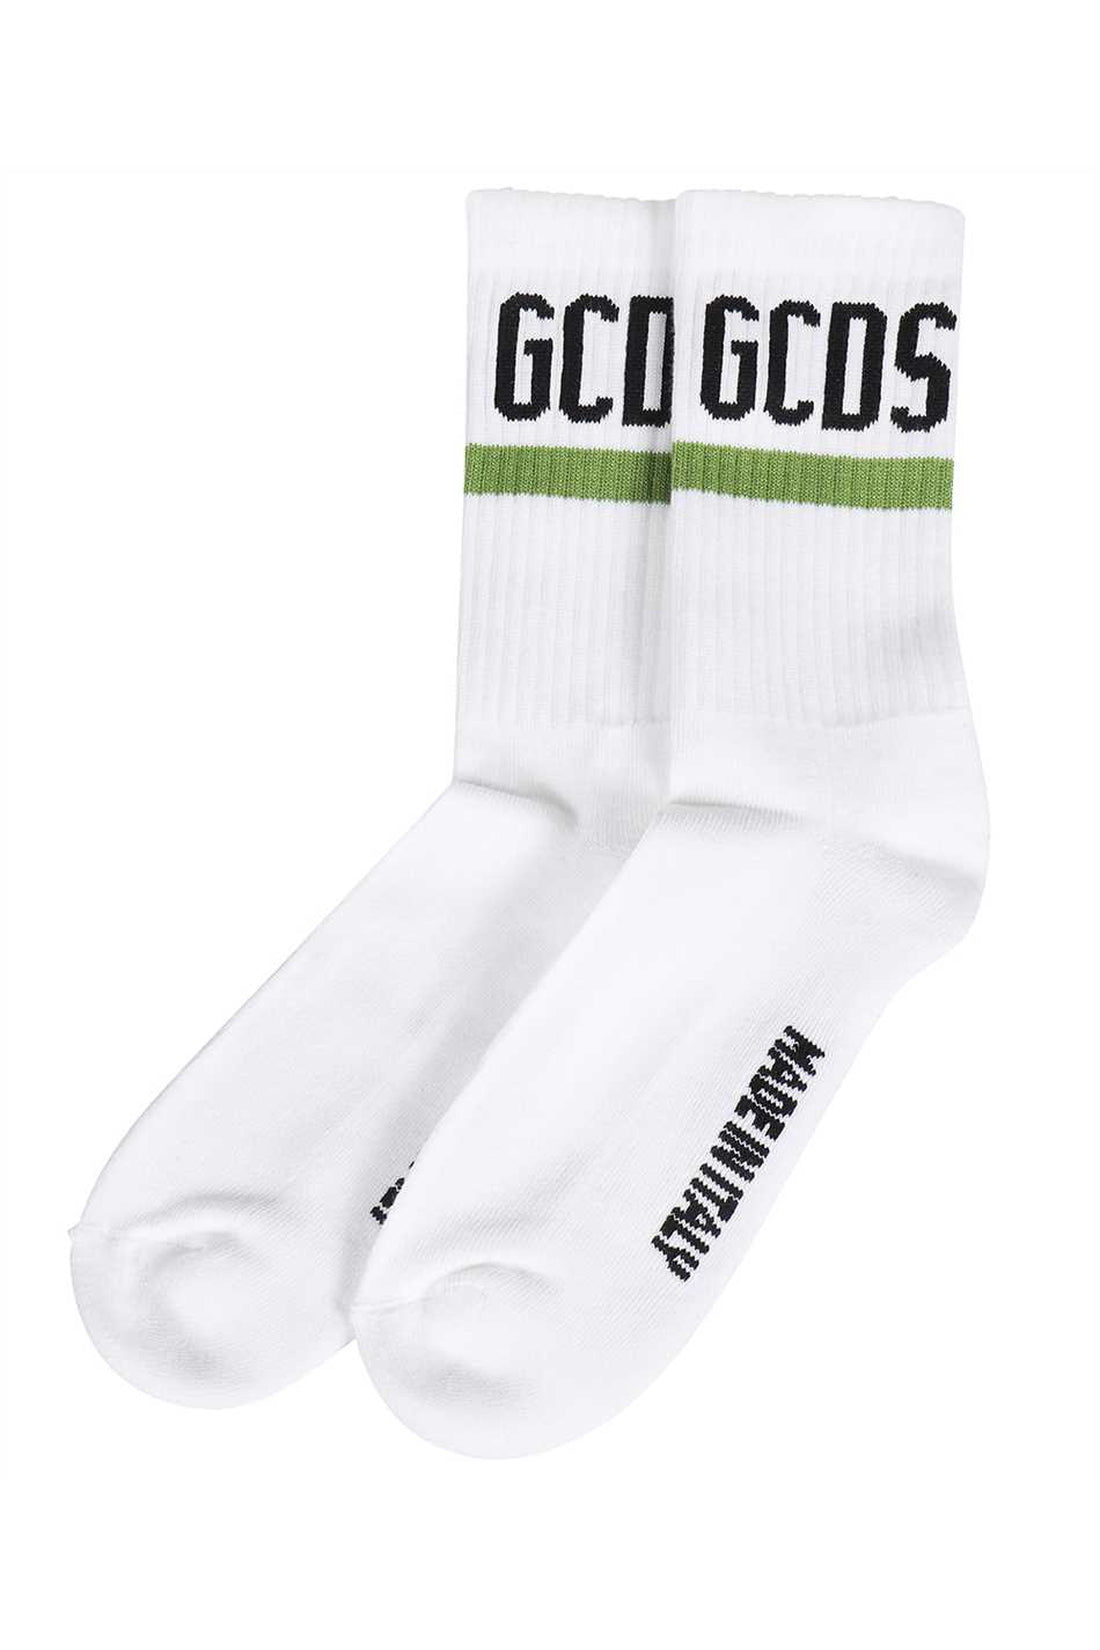 GCDS-OUTLET-SALE-Cotton socks-ARCHIVIST